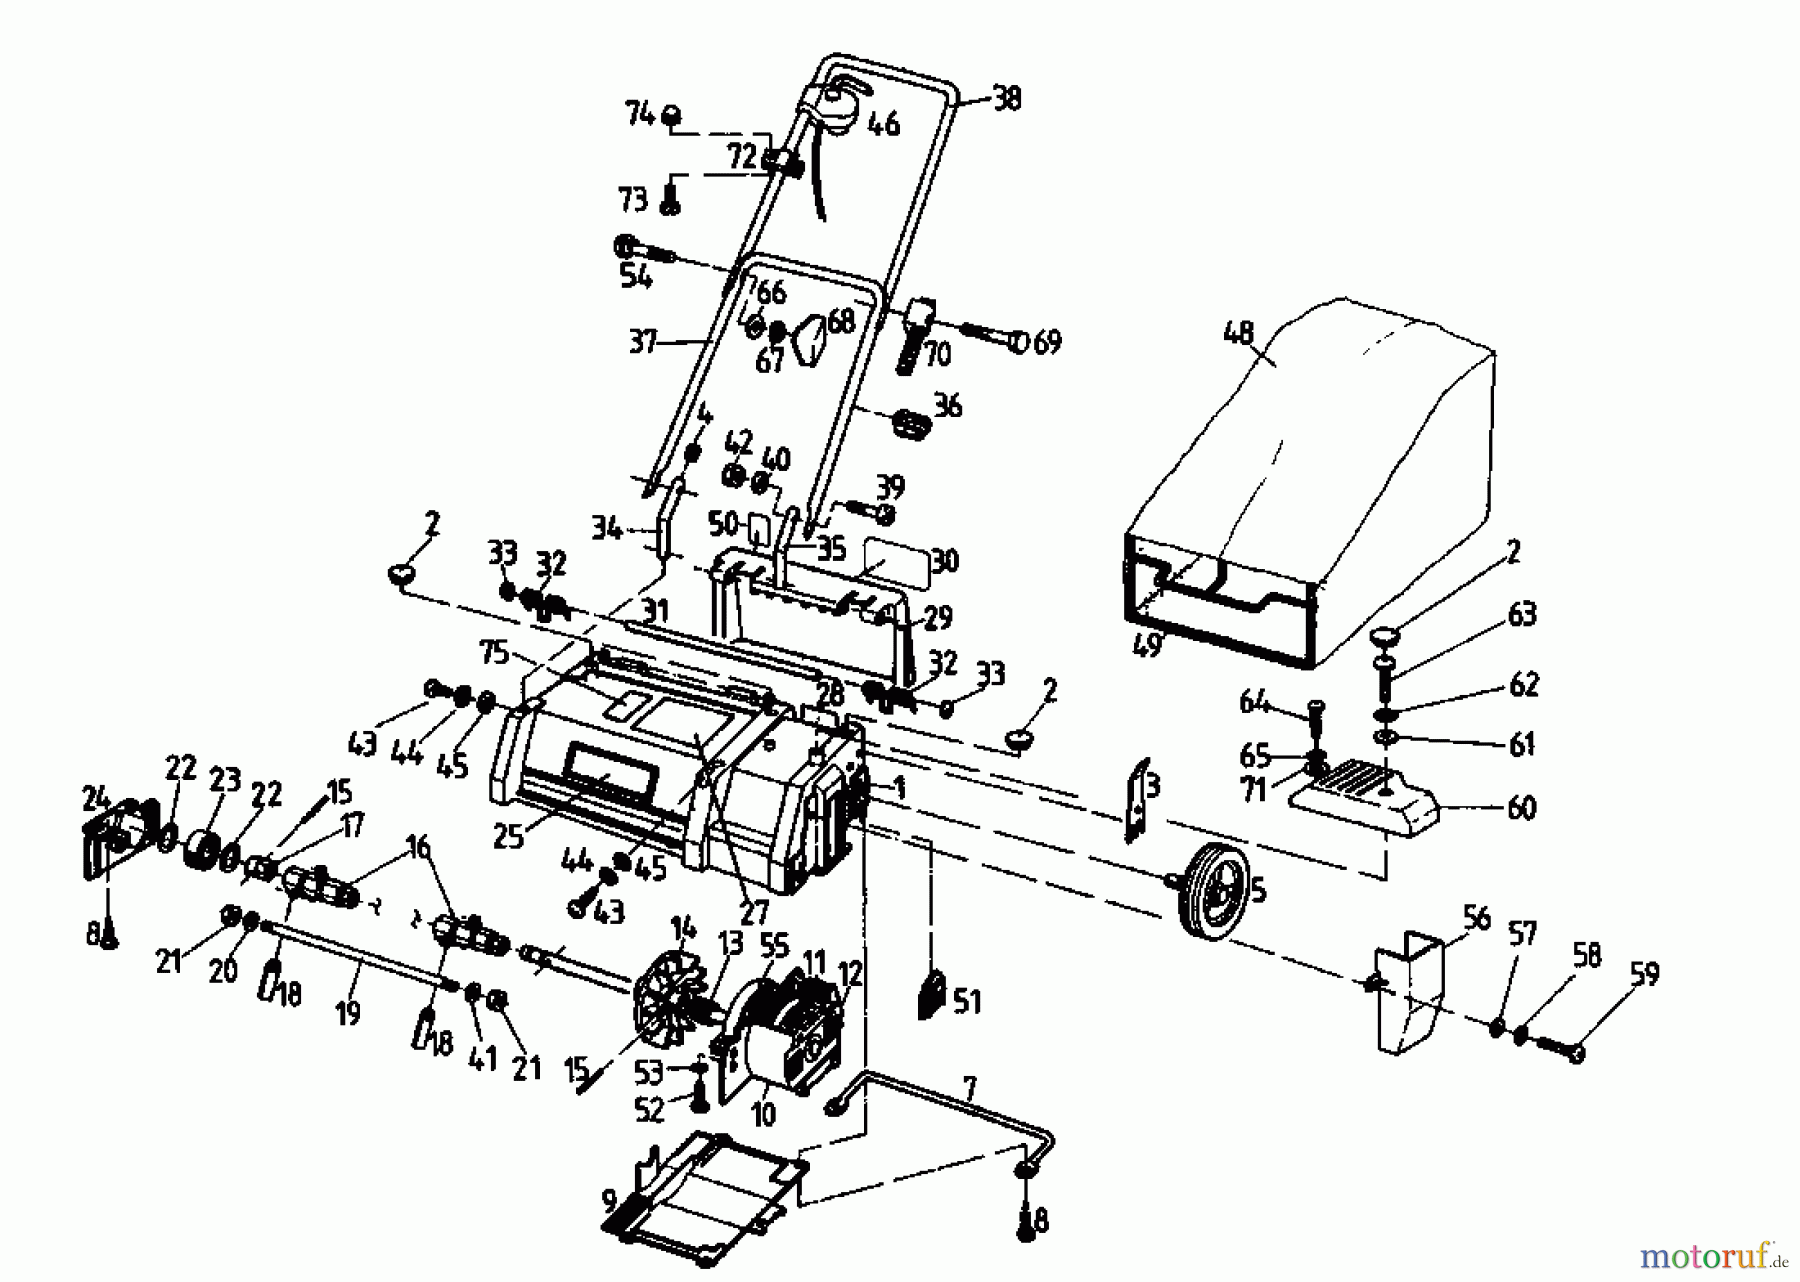  Golf Scarificateur électrique 133 VE 02826.01  (1993) Machine de base